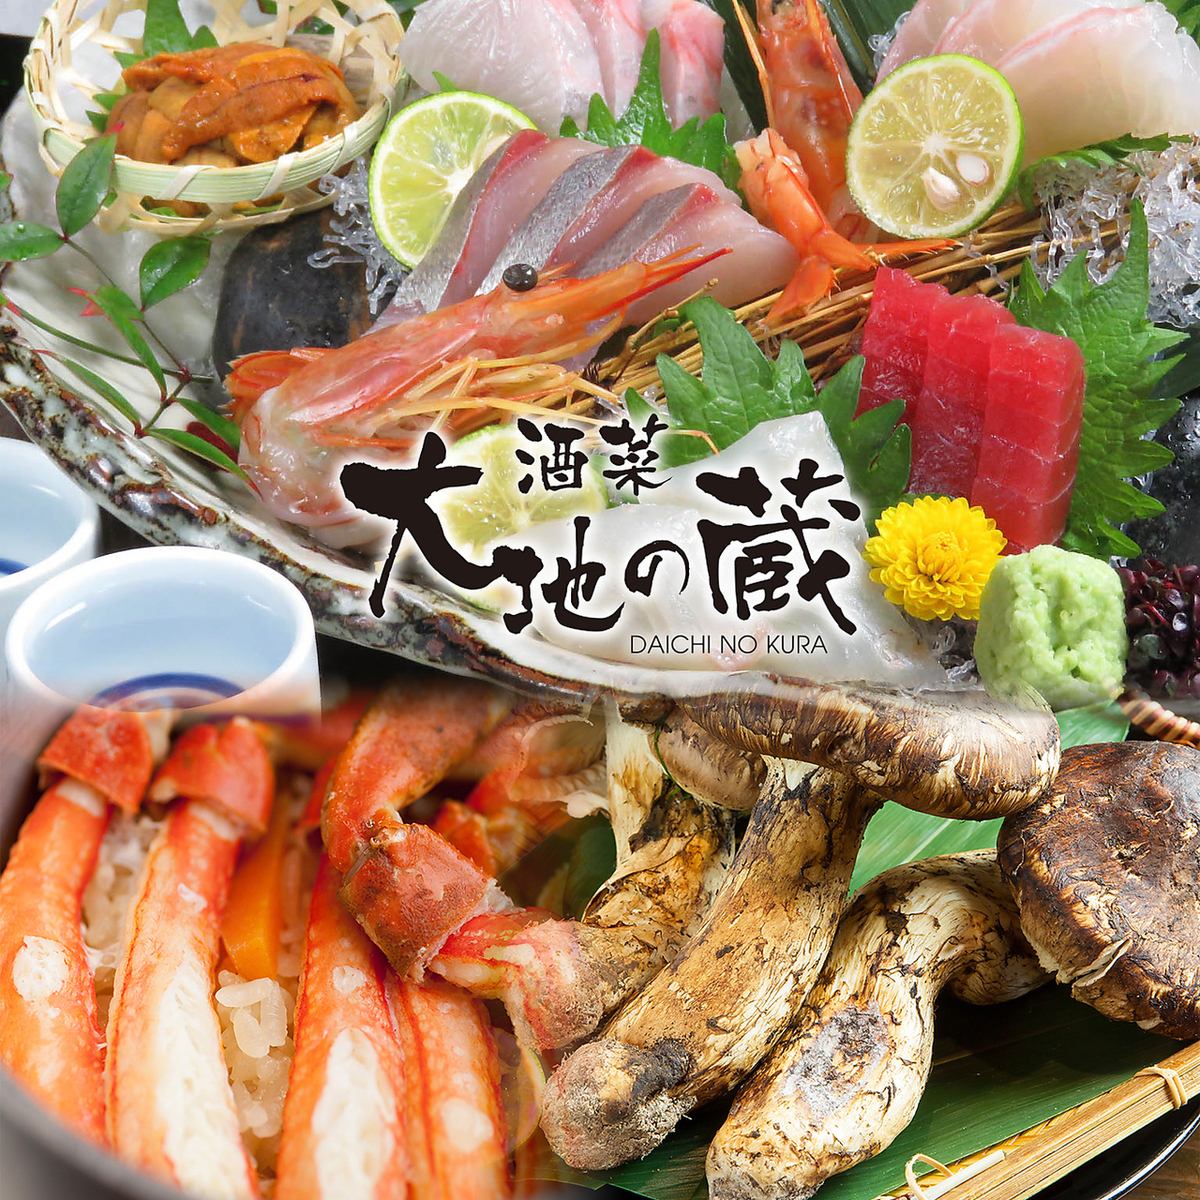 旬の食材や地元舞鶴の漁港直送の新鮮魚介料理をご提供。各種宴会も承っております。